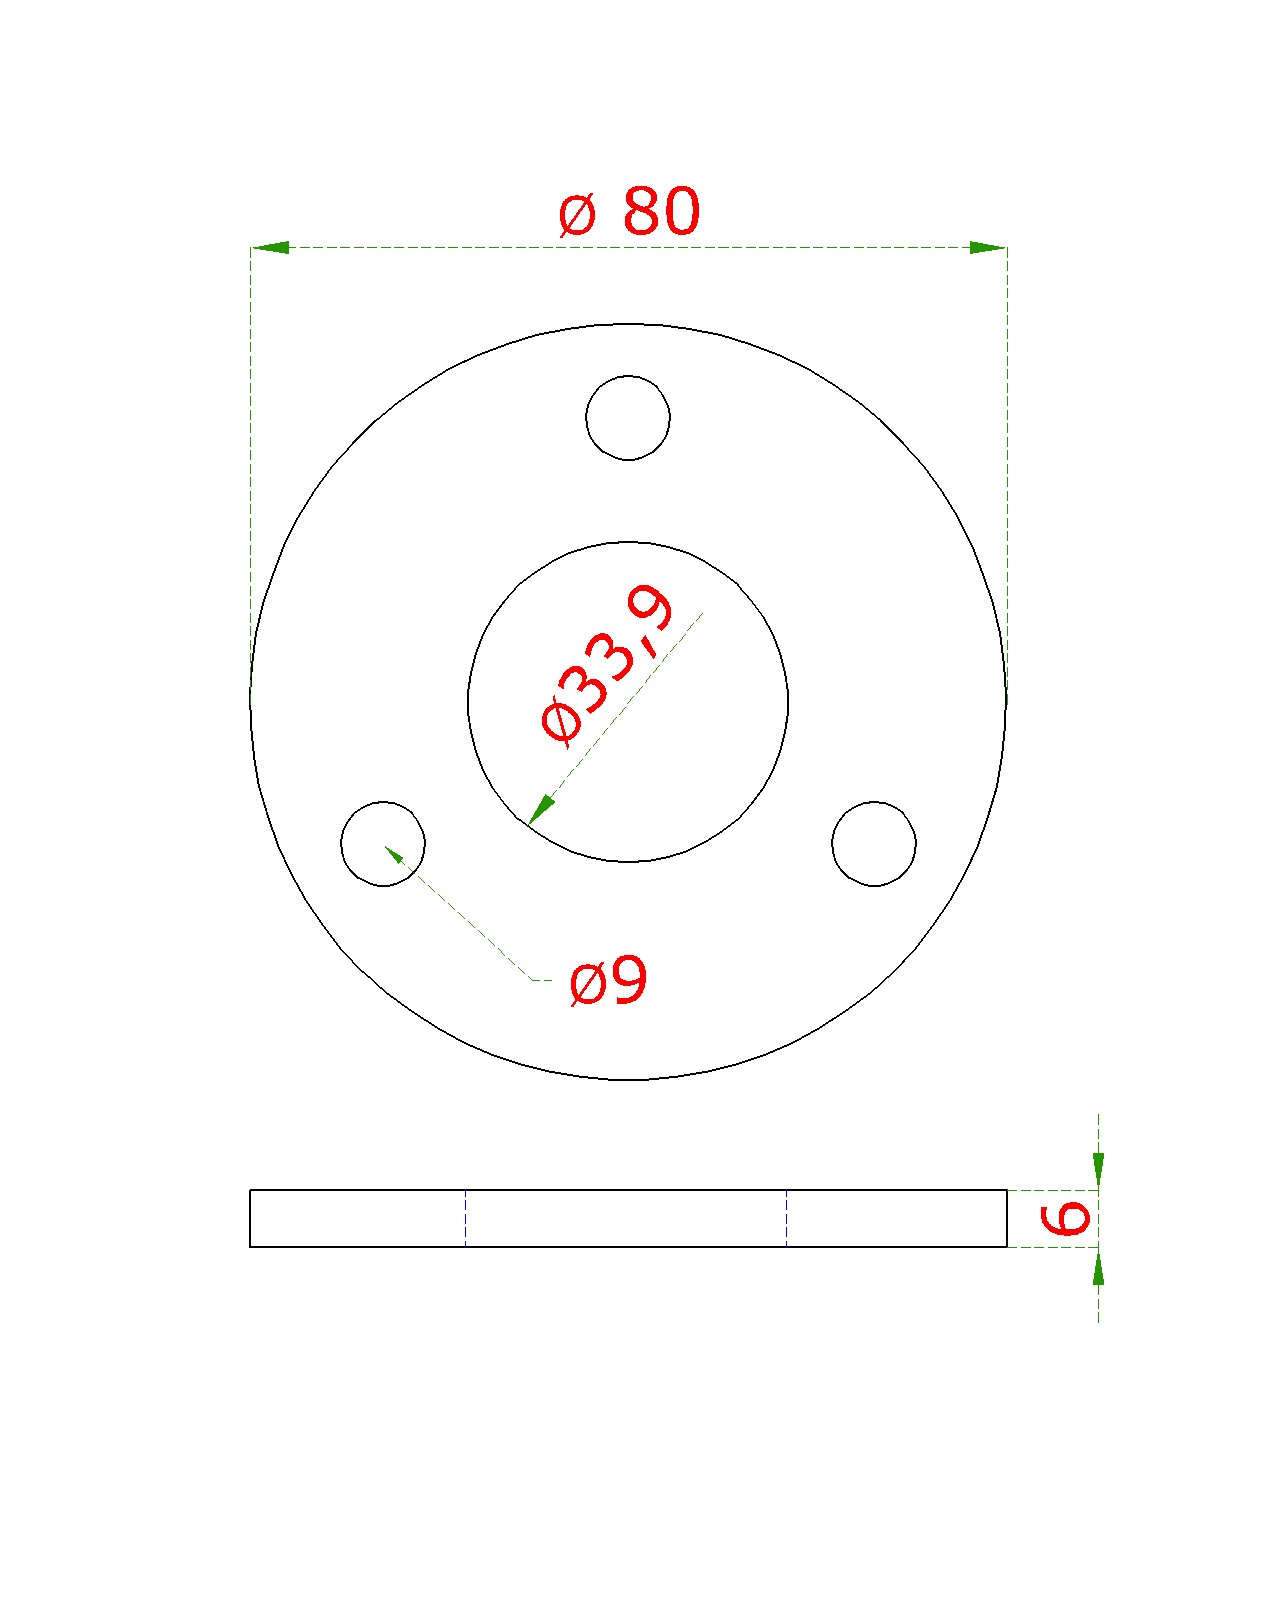 Kotevní deska (ø 80x6 mm) na trubku ø 33,7 mm (otvor ø 33,9 mm), bez povrchové úpravy /AISI304